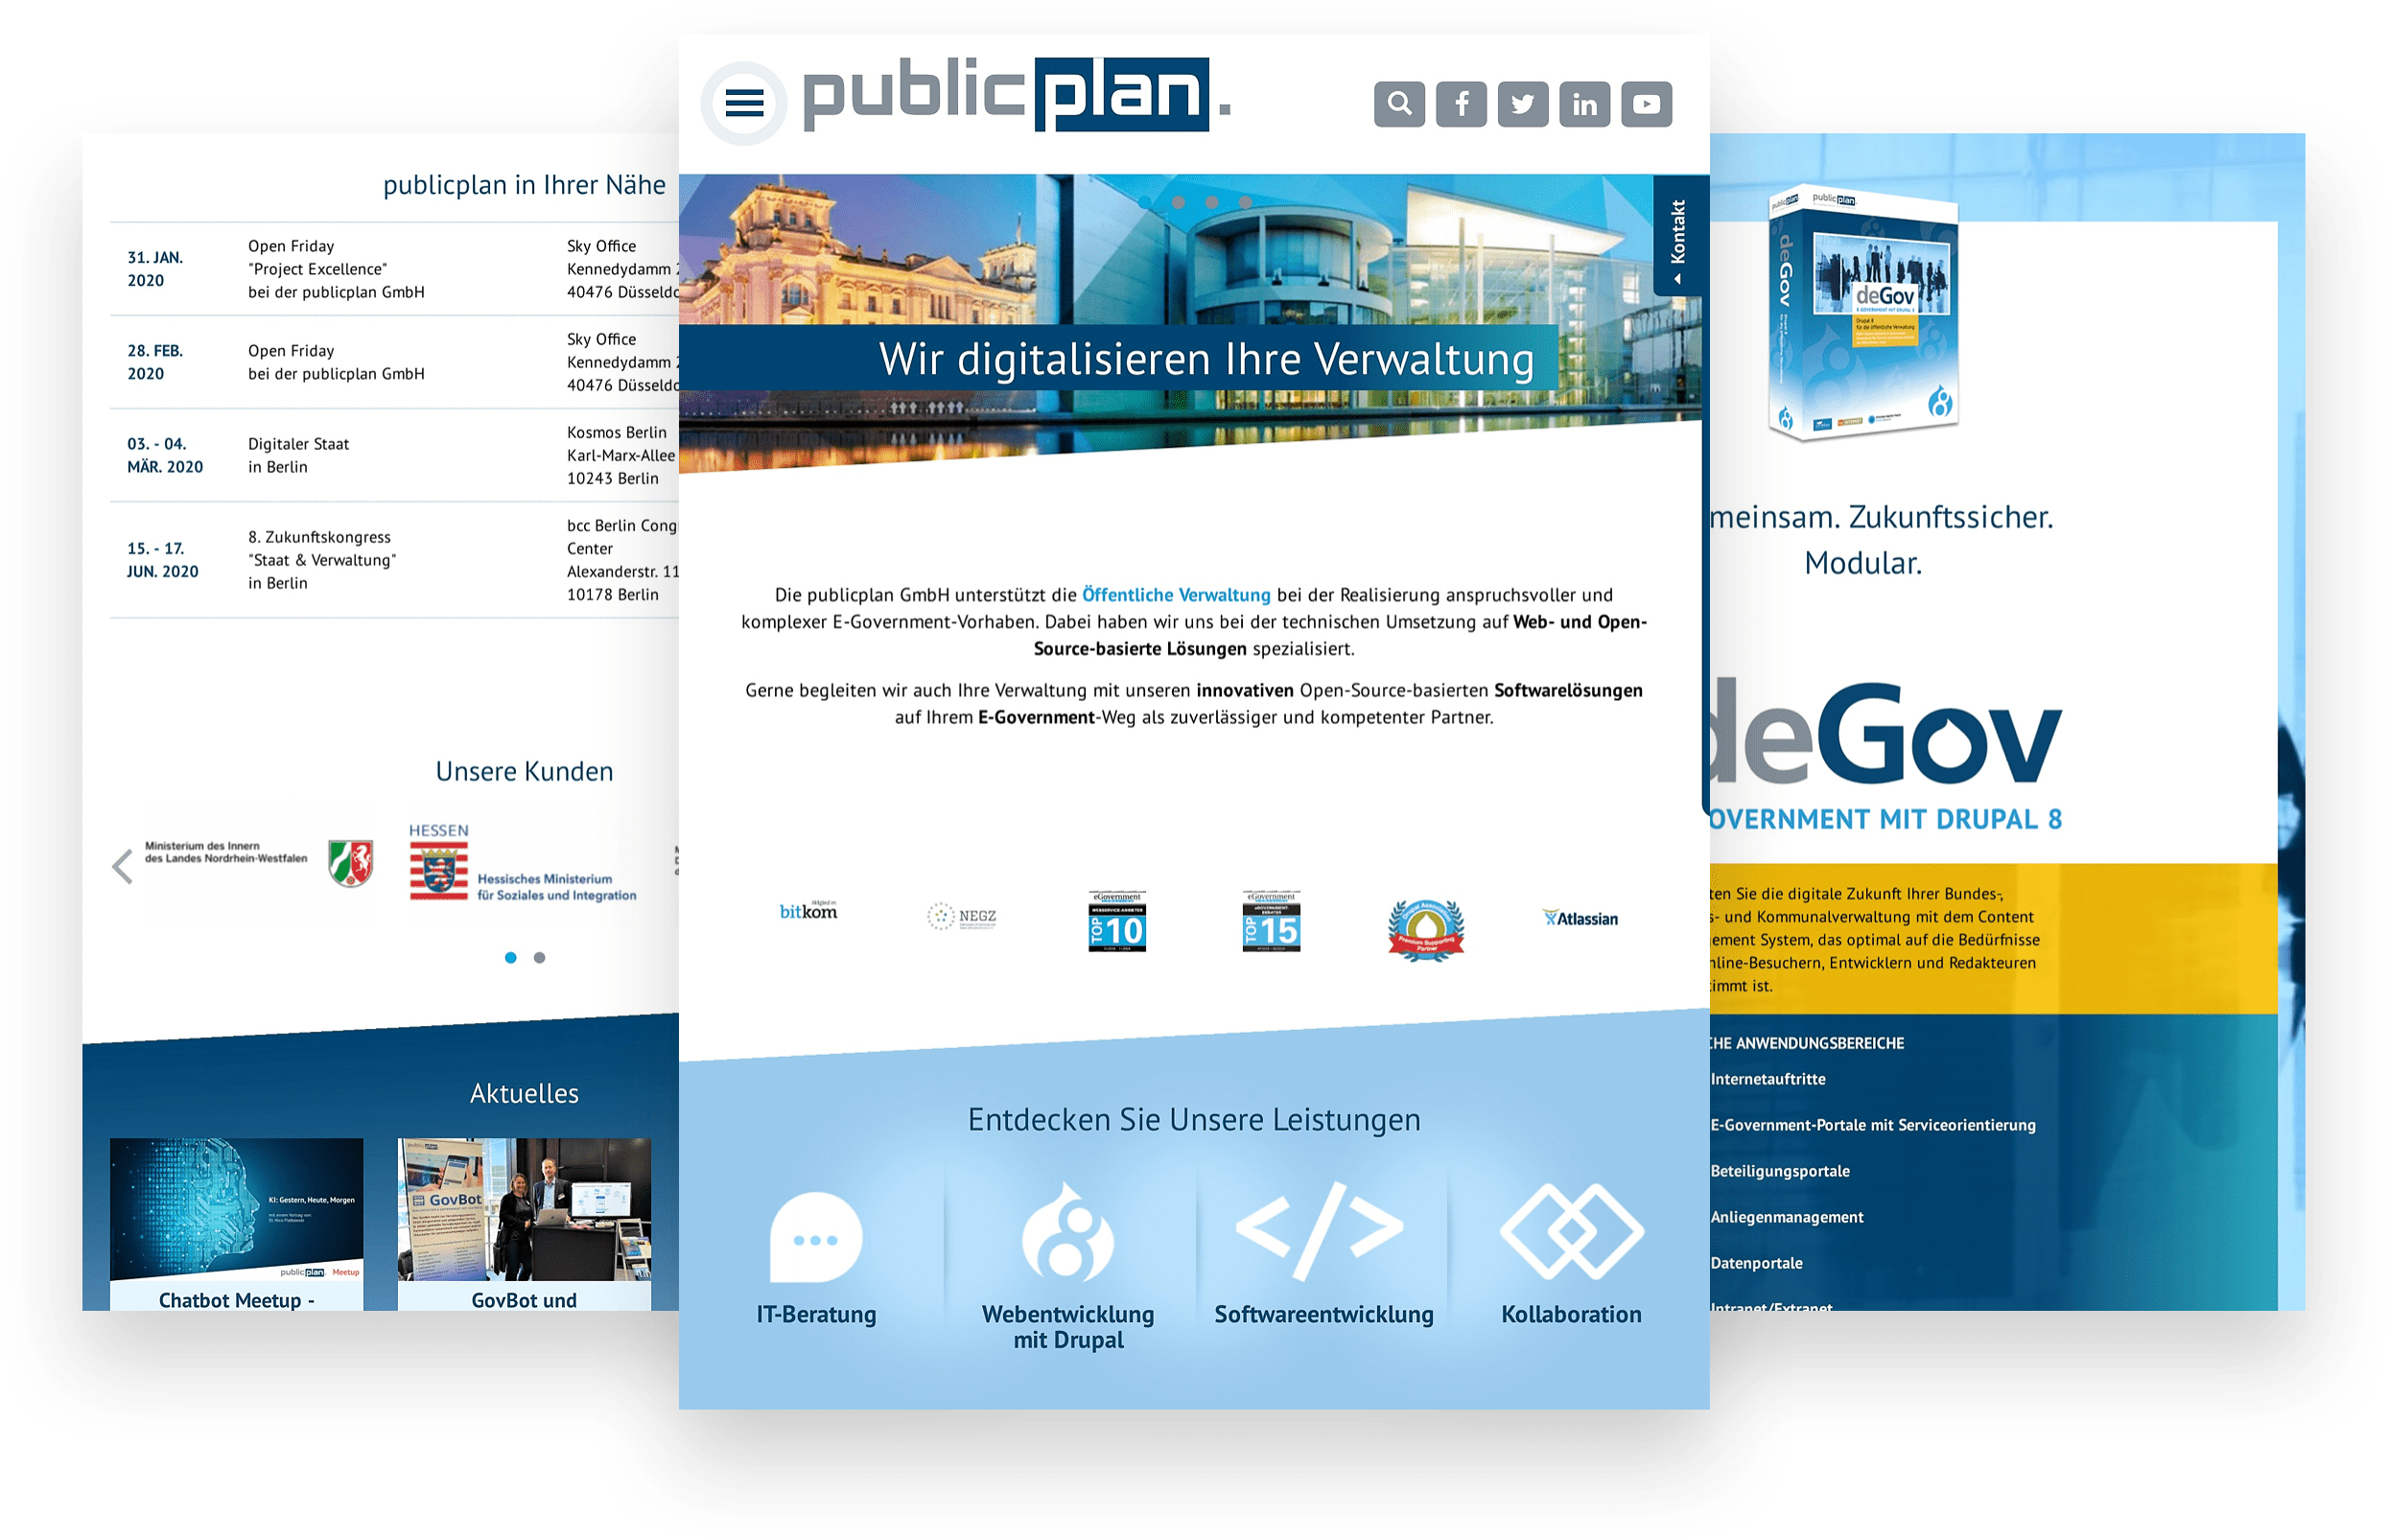 Public Plan Europe